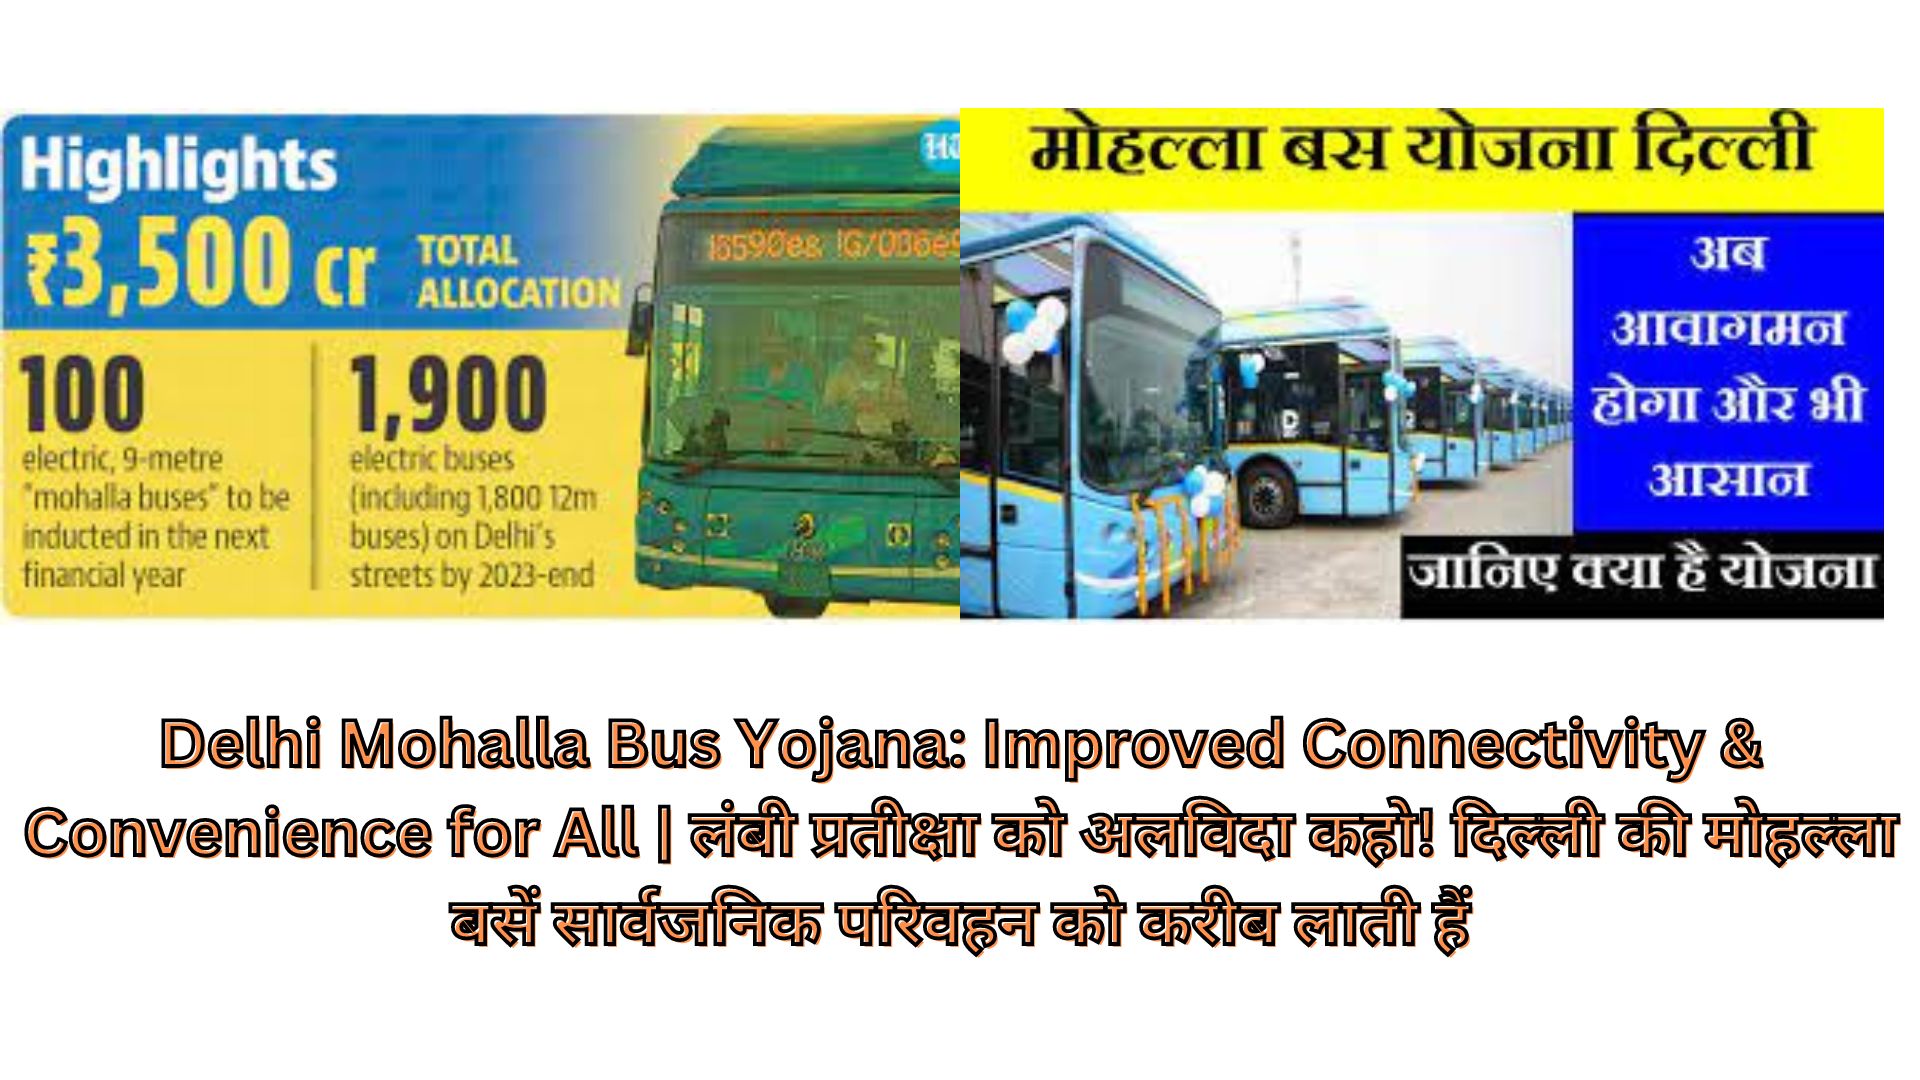 Delhi Mohalla Bus Yojana: Improved Connectivity & Convenience for All | लंबी प्रतीक्षा को अलविदा कहो! दिल्ली की मोहल्ला बसें सार्वजनिक परिवहन को करीब लाती हैं